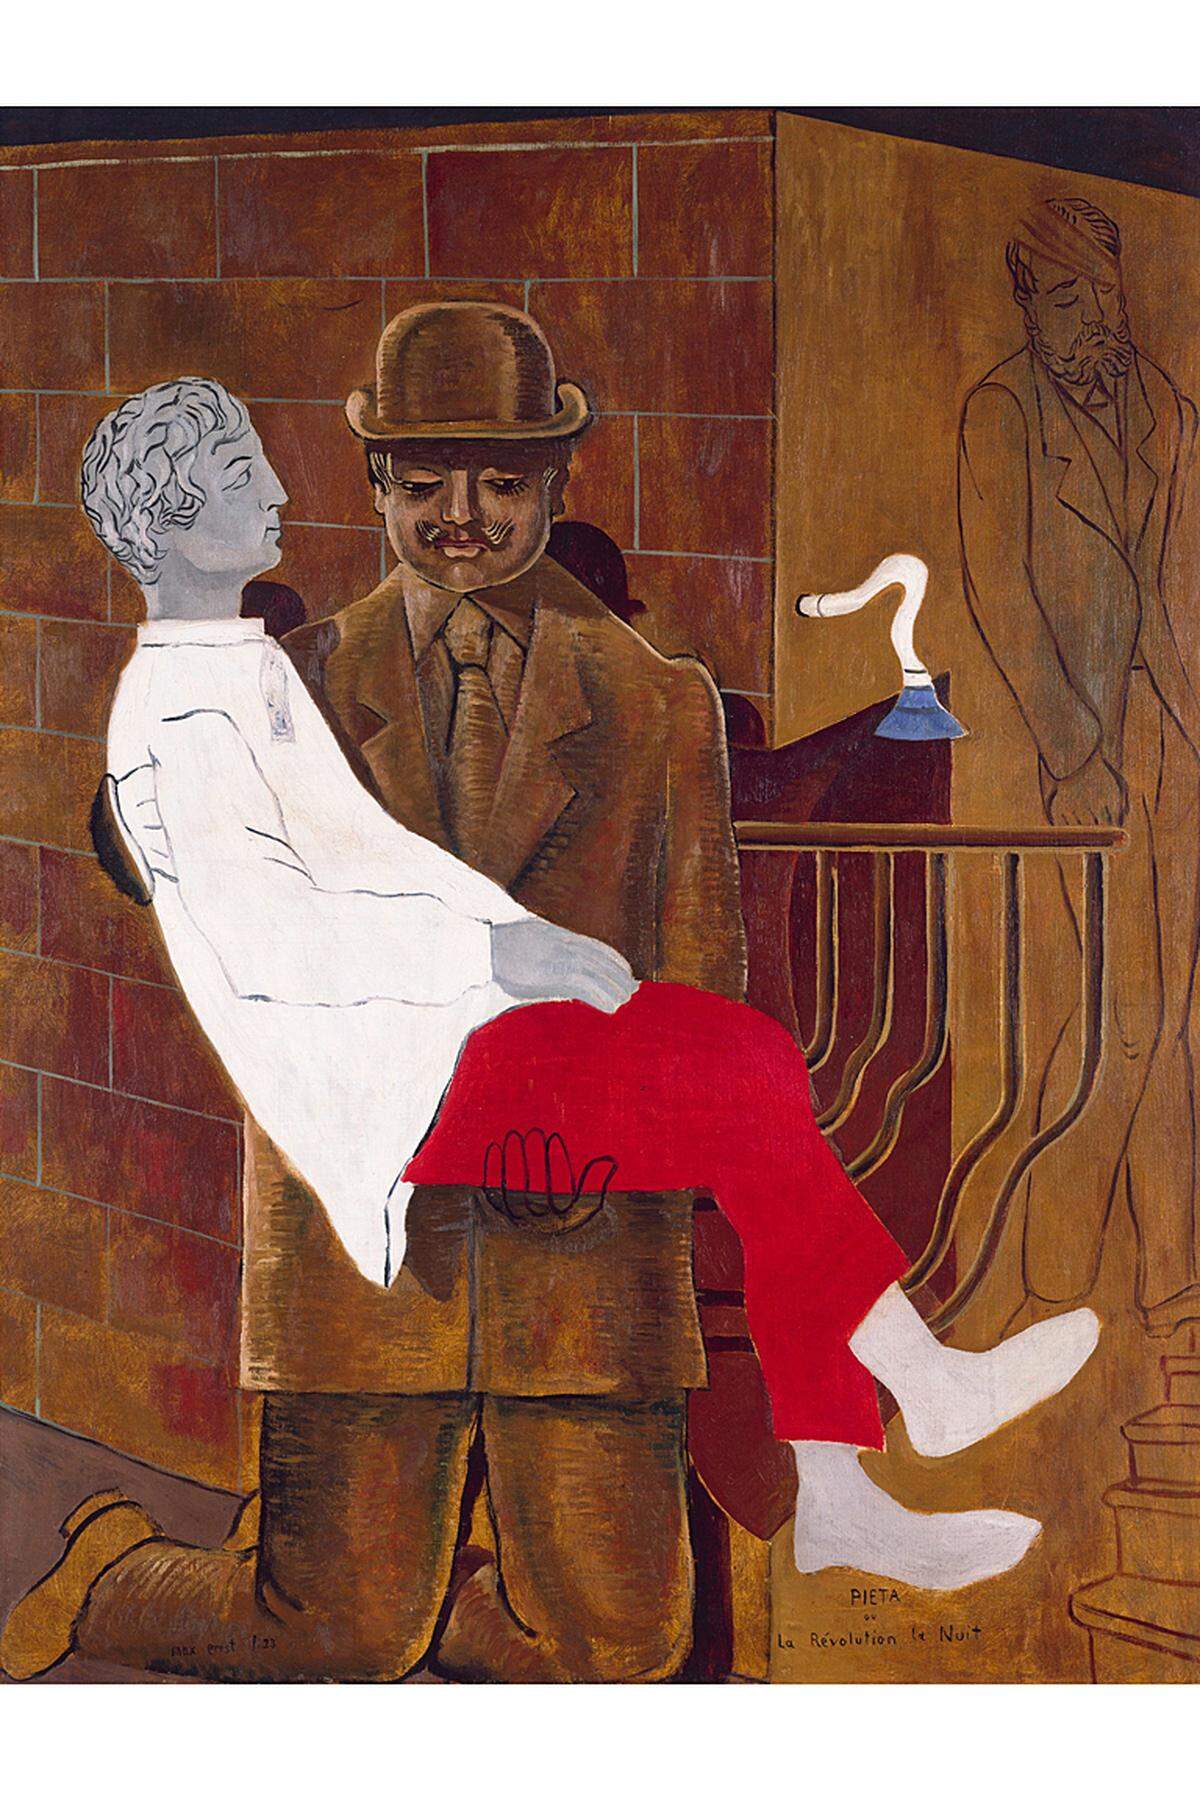 Der Künstler gilt als Pionier des Surrealismus und entdeckte raffinierte Techniken wie Frottage, Grattage und Drip Painting. Letzteres wurde durch Arbeiten des US-Expressionisten Jackson Pollock populär.Im Bild: Pietà oder die Revolution bei Nacht (1923, (c) VBK, Wien 2013 / Tate, London 2012)